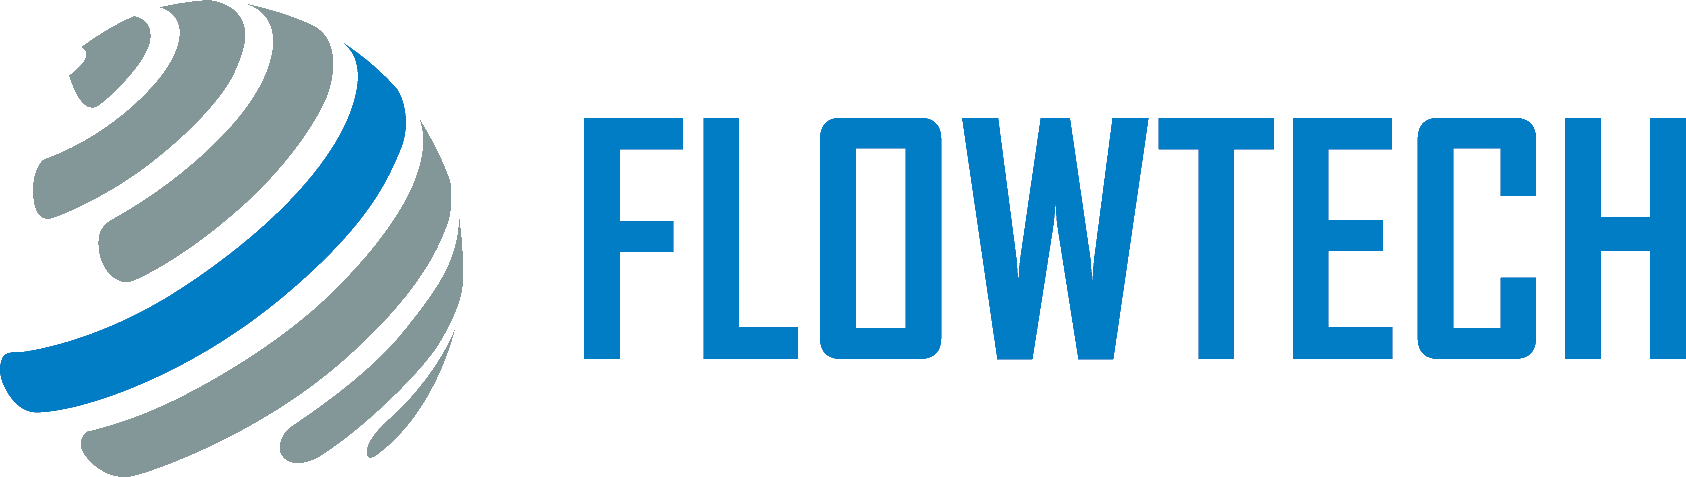 Flowtech Icon